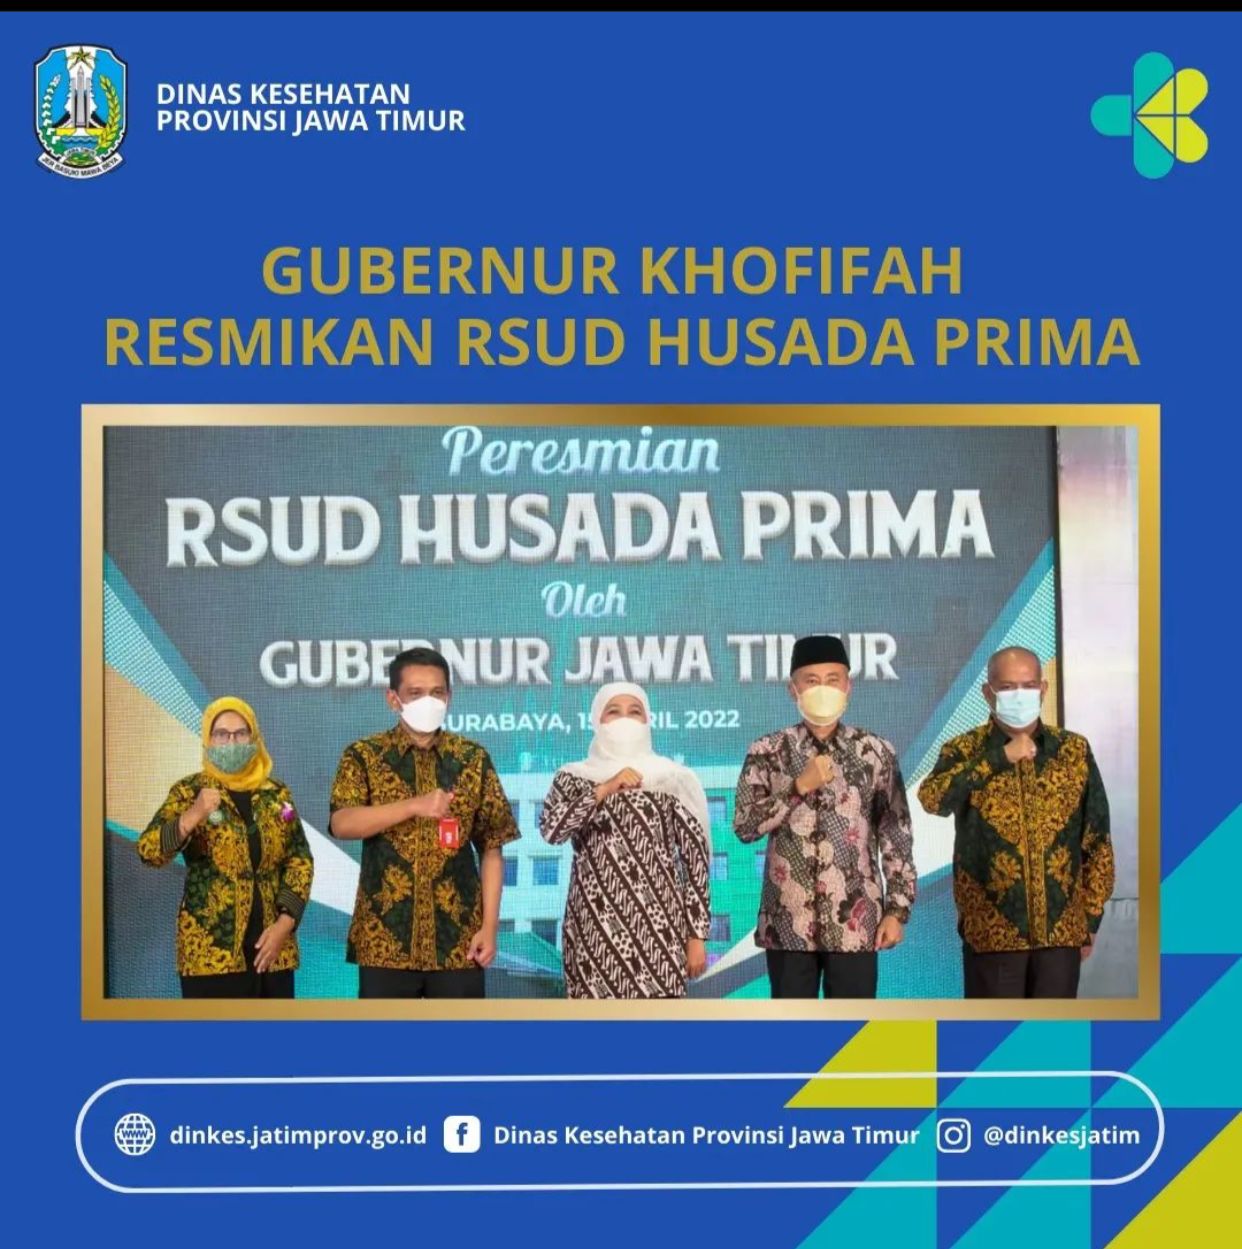 Foto kegiatan Gubernur Khofifah Resmikan RSUD HUSADA PRIMA